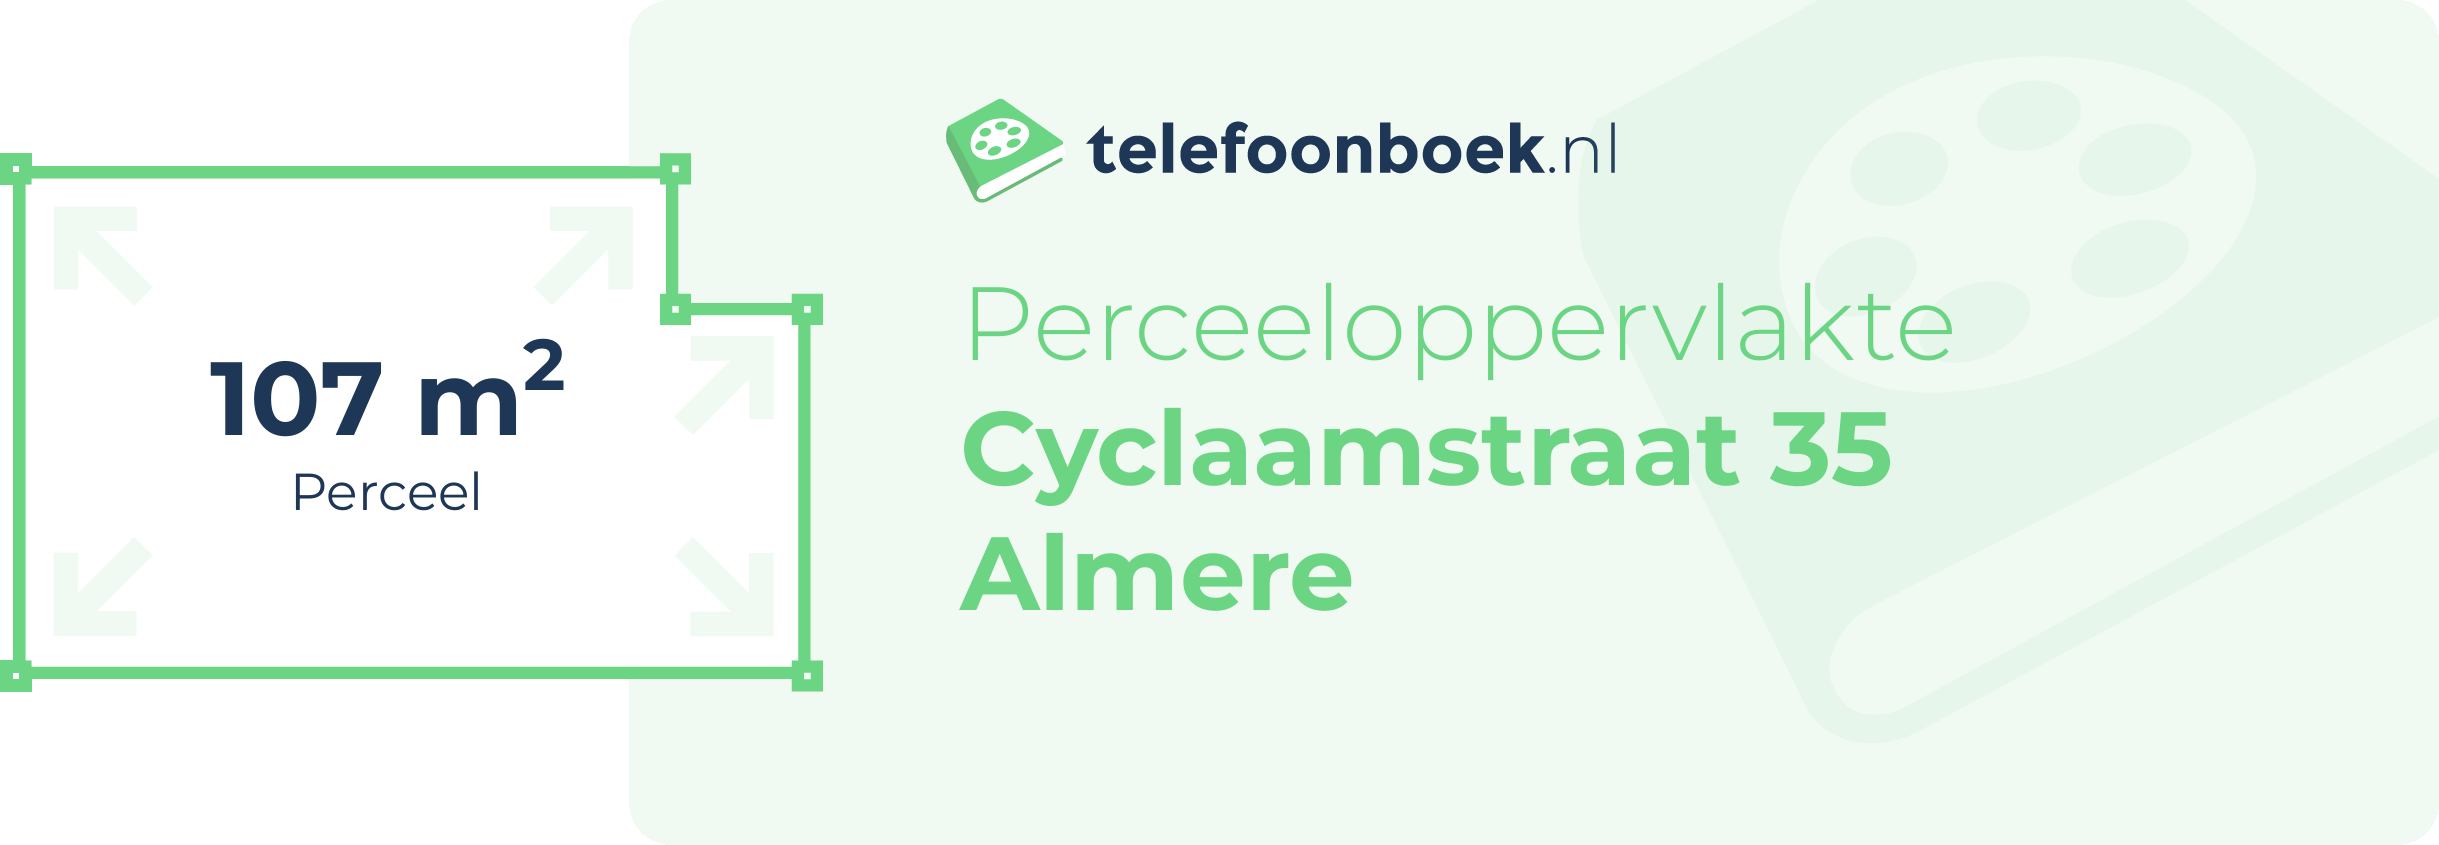 Perceeloppervlakte Cyclaamstraat 35 Almere